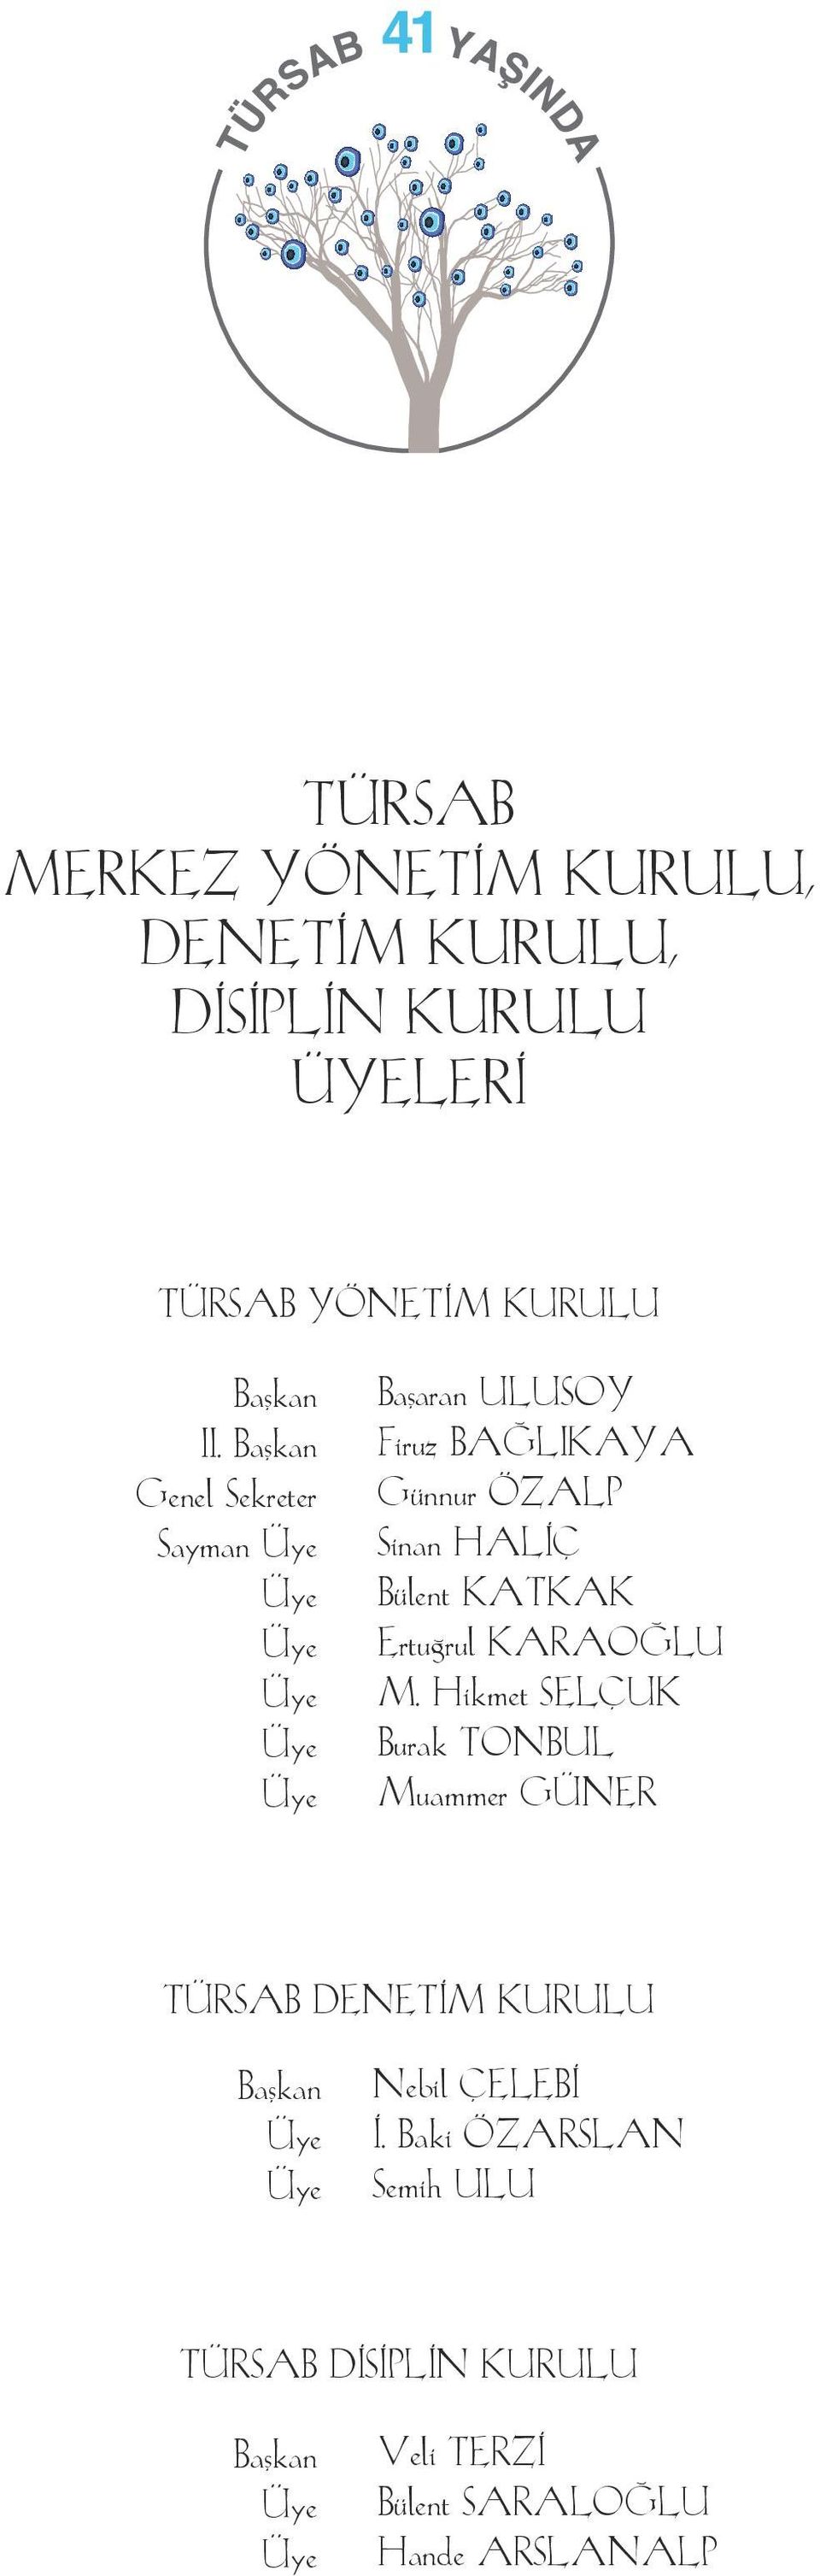 Bülent KATKAK Ertuğrul KARAOĞLU M.